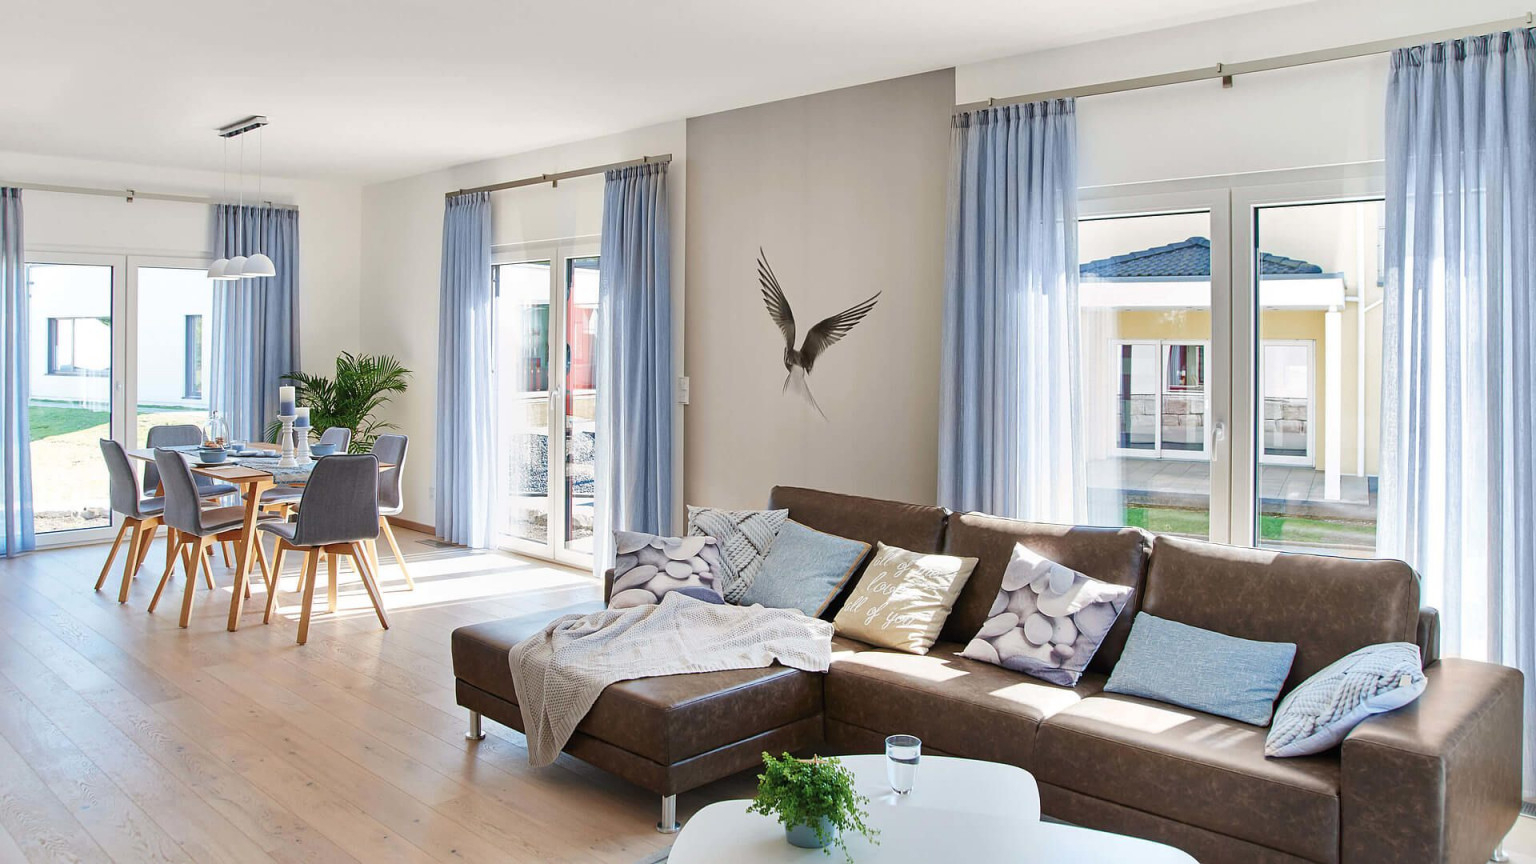 Wohnesszimmer Brauner Holzfußboden Weiß Und Graue Wände von Gardinen Für Bodentiefe Fenster Wohnzimmer Photo